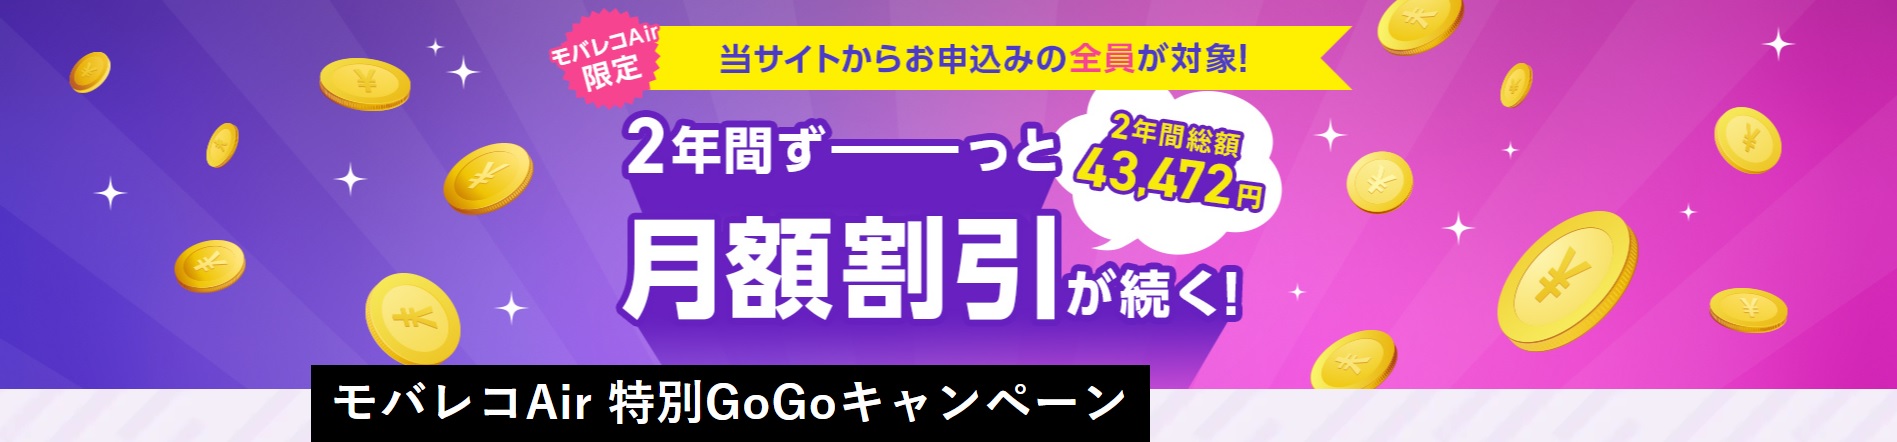 モバレコAir 特別GoGoキャンペーン